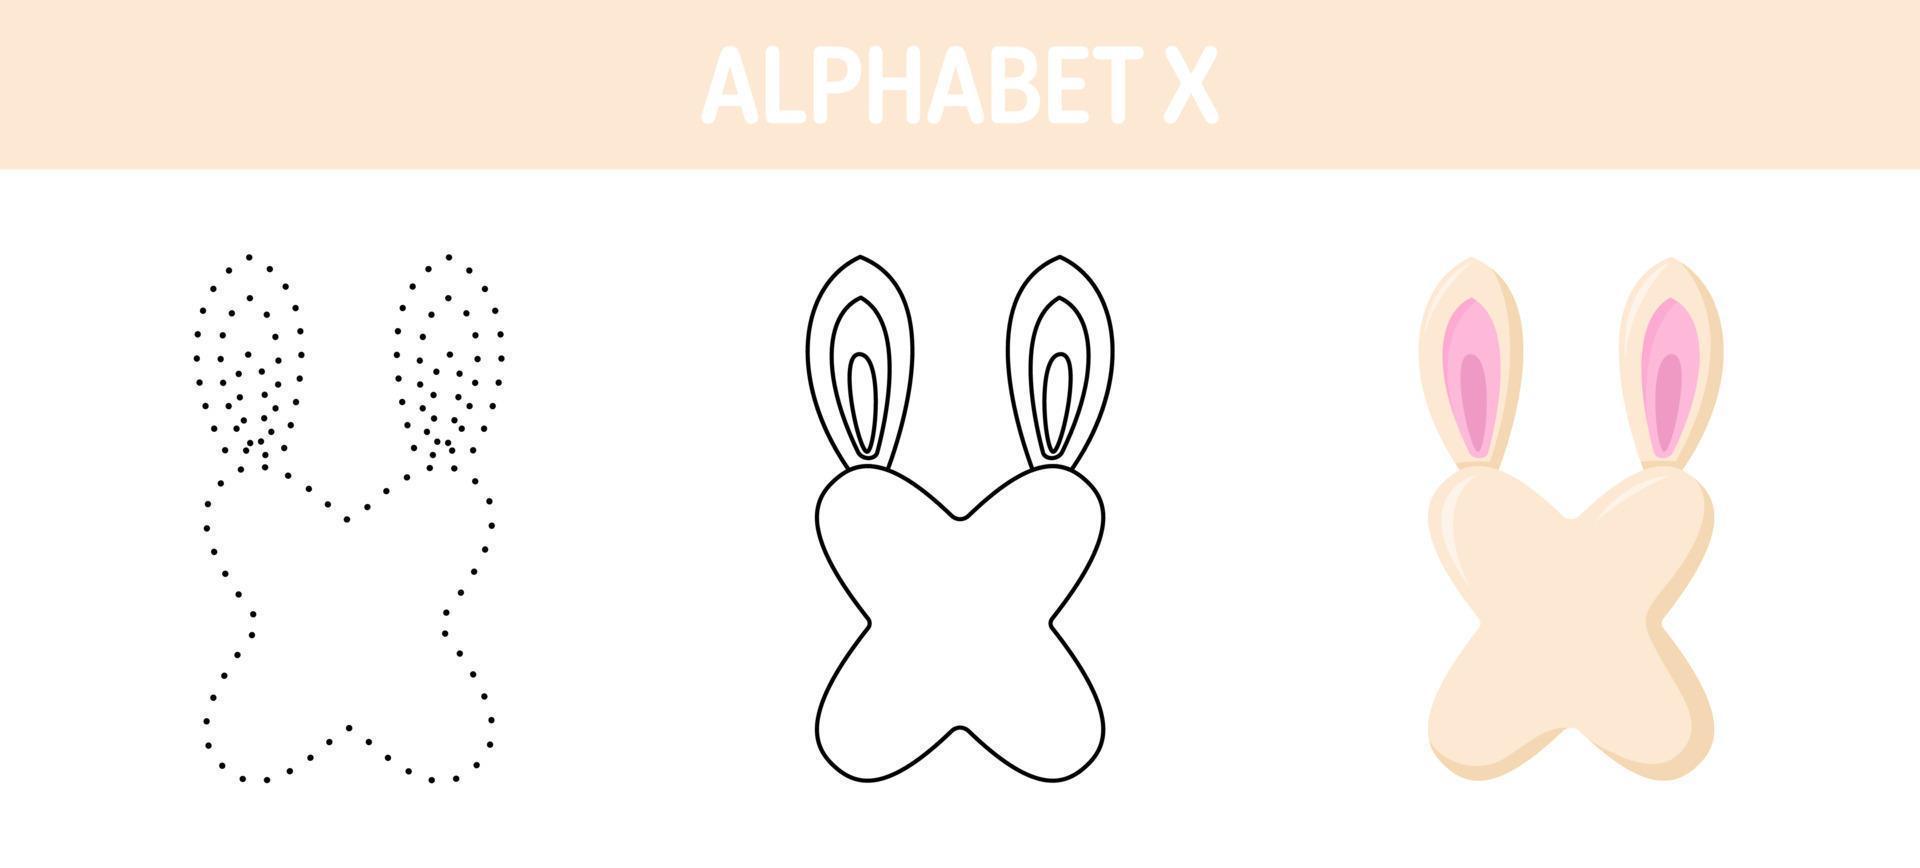 Arbeitsblatt zum nachzeichnen und ausmalen von alphabet x für kinder vektor